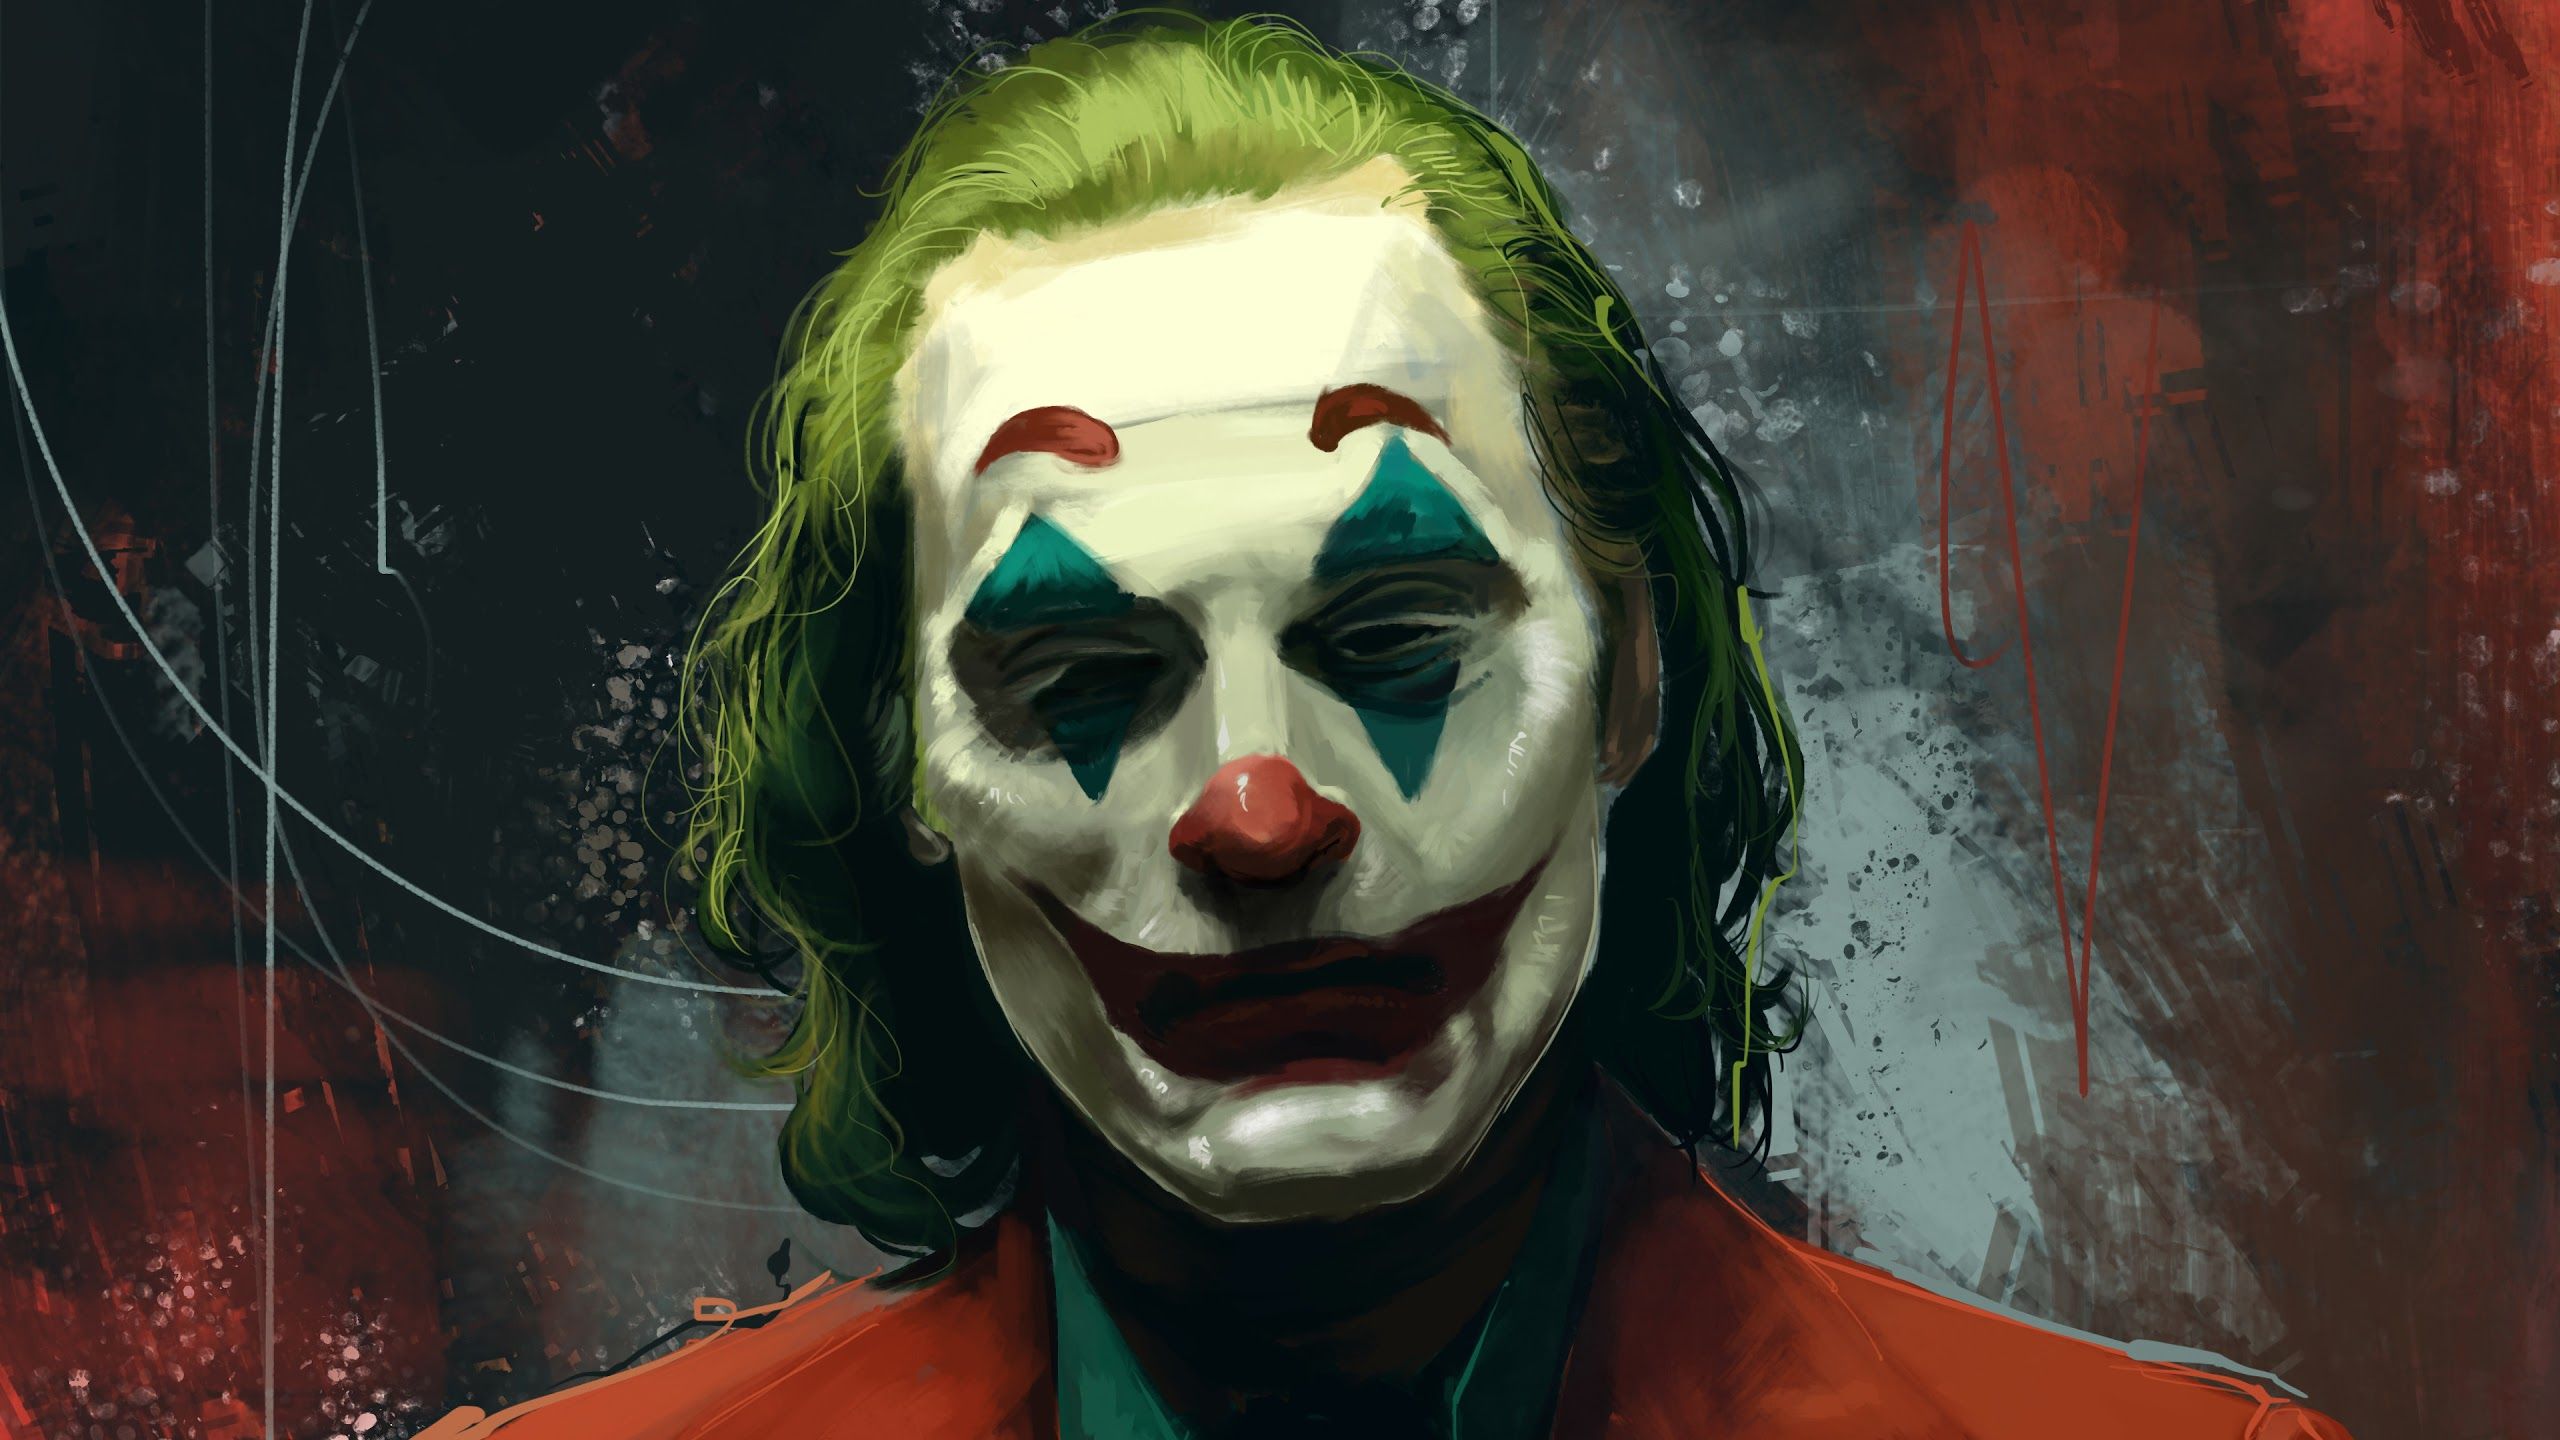 Wallpaper For Pc Of Joker